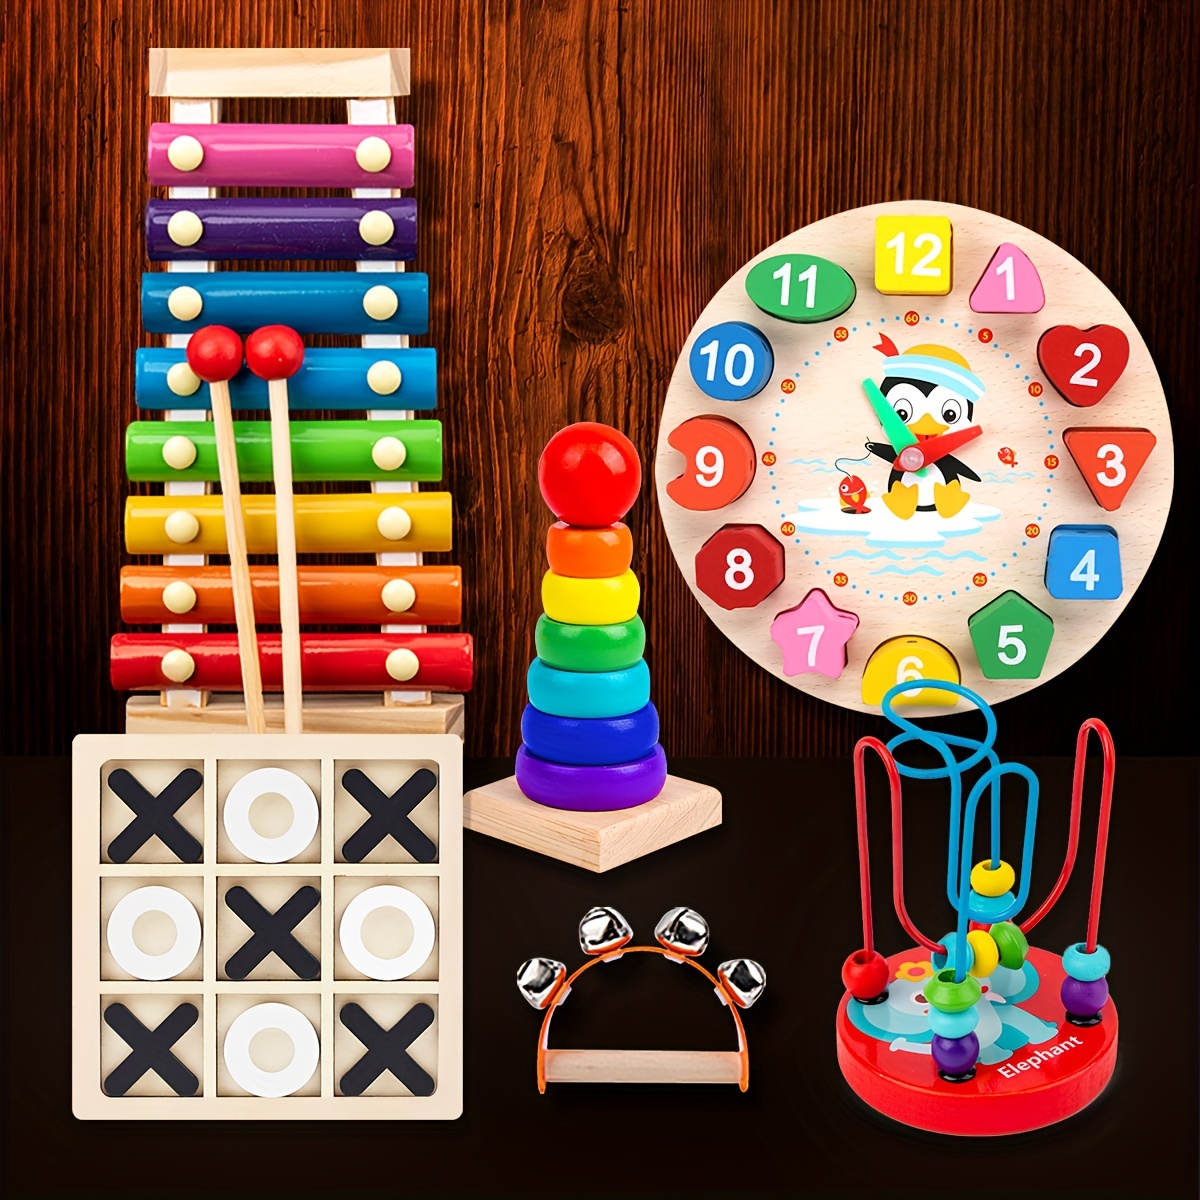 Juguetes Montessori para niños de 2, 3 y 4 años, juguete multifuncional  para huerto, juguete educativo de madera, juguetes educativos para niños y